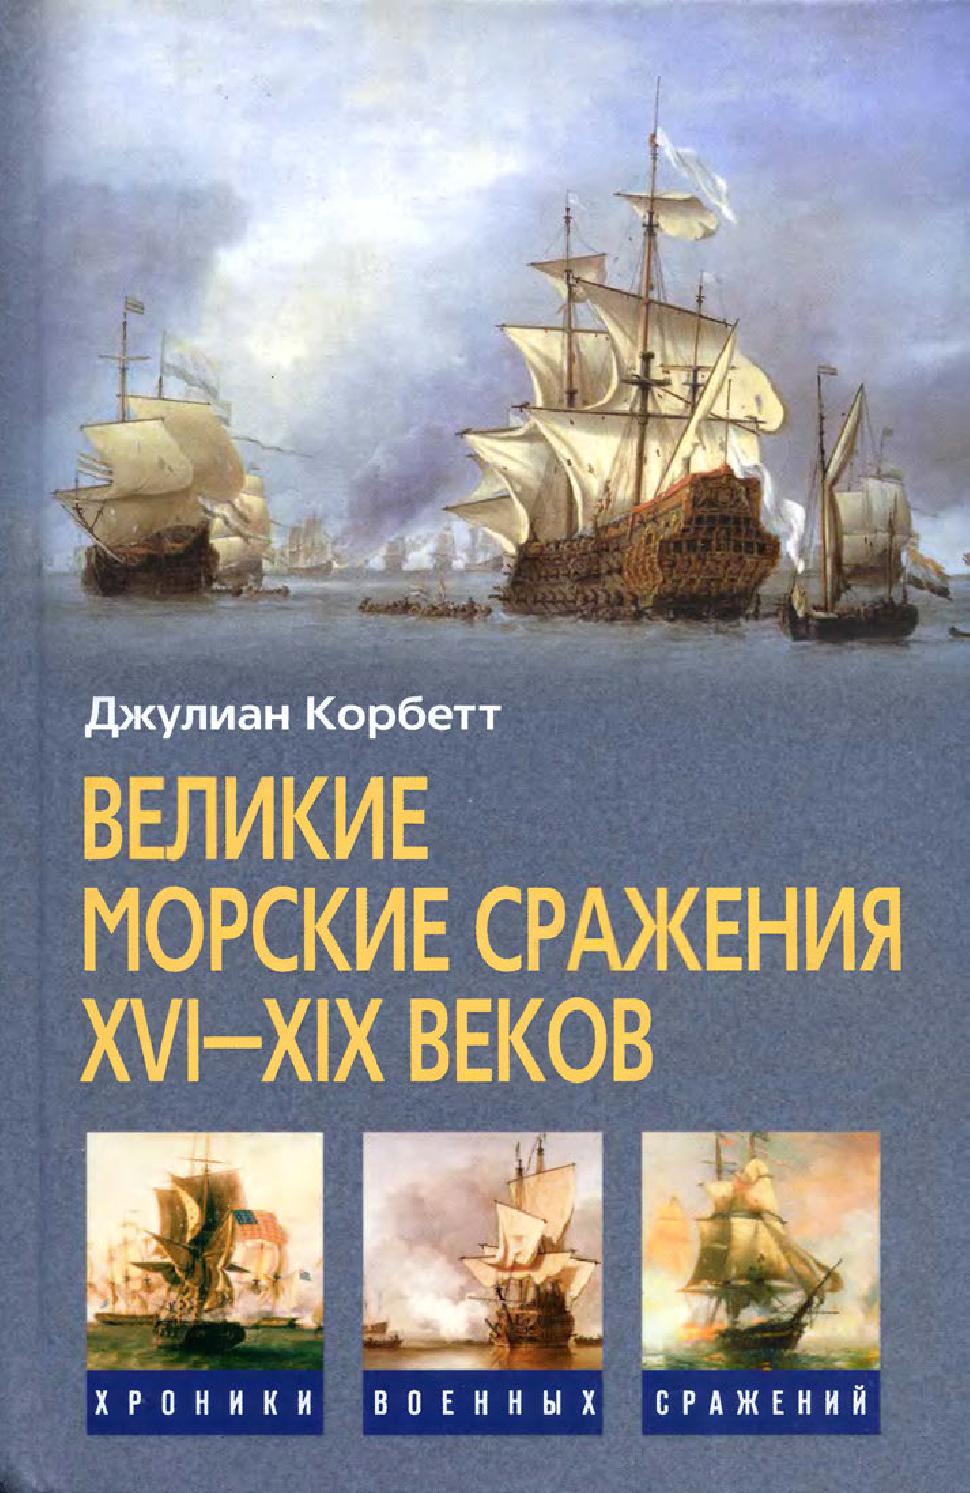 Великие морские сражения XVI—XIX веков, 2009, Джулиан Корбетт